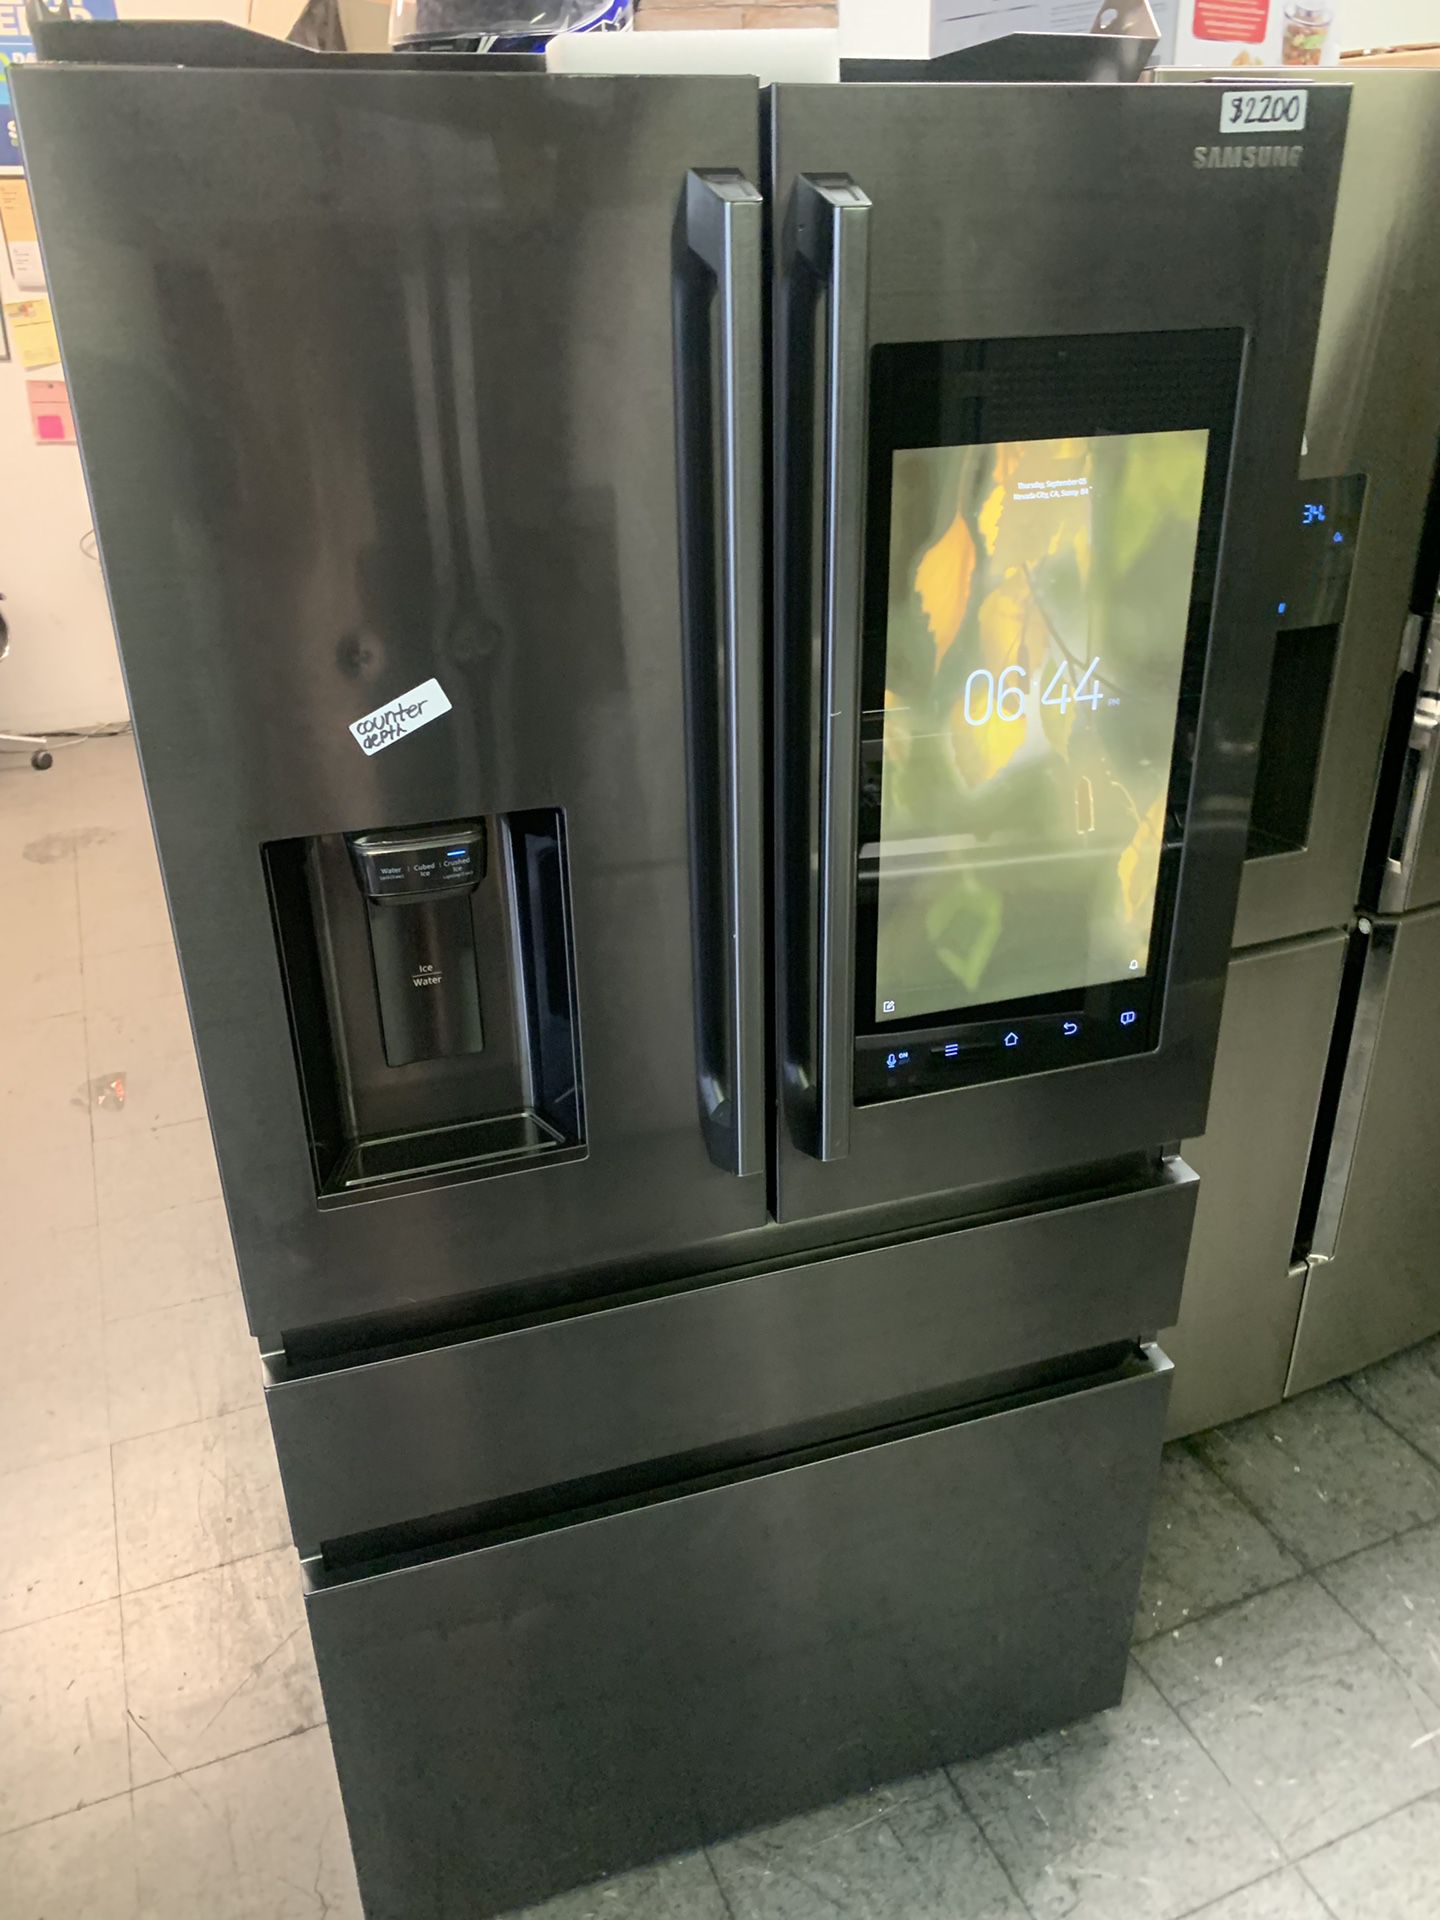 Family hub flex fridge 4 door black stainless steel 2018